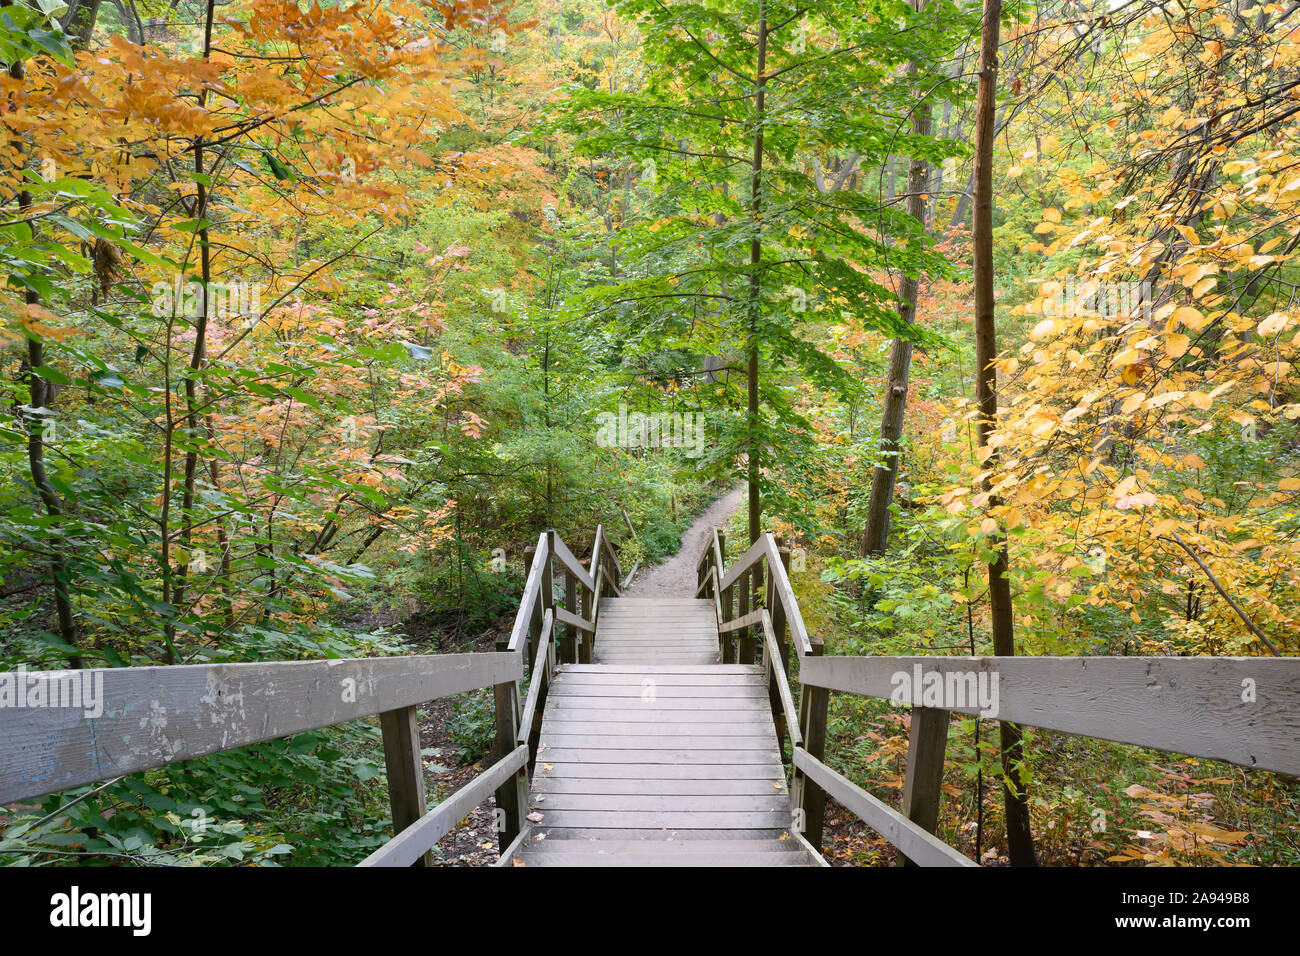 Eine Treppe in Glen Stewart Schlucht, durch die Farben des Herbstes akzentuiert, im Osten Strände Gemeinschaft von Toronto, Kanada. Stockfoto